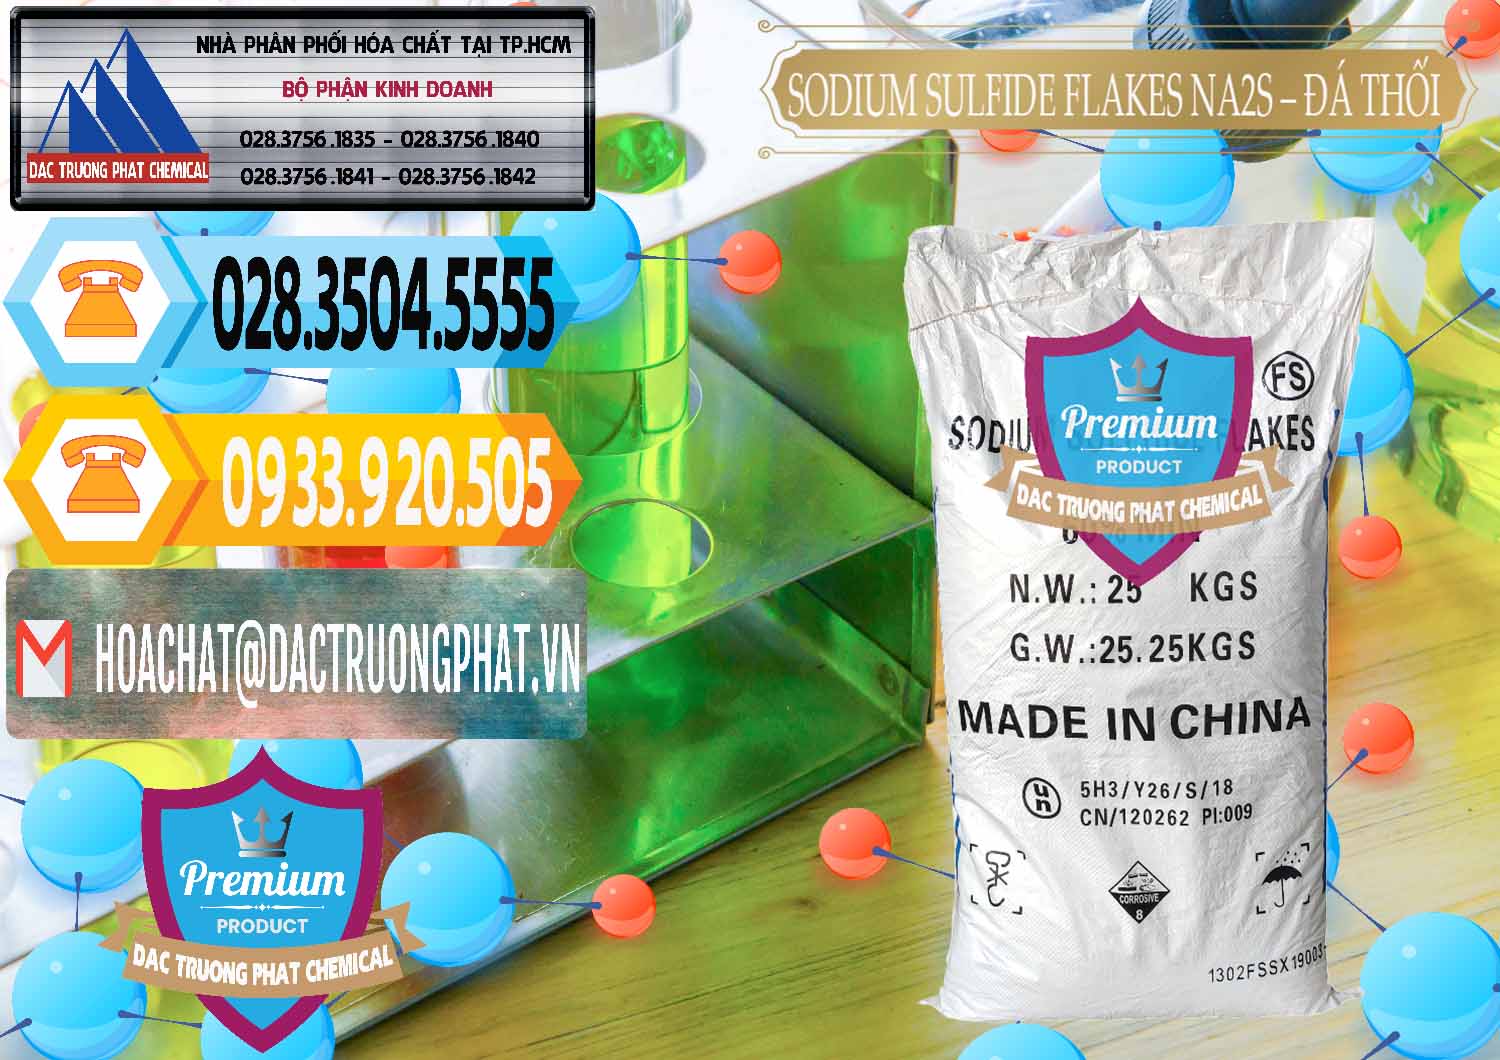 Cty nhập khẩu và bán Sodium Sulfide Flakes NA2S – Đá Thối Đỏ Trung Quốc China - 0150 - Nơi phân phối - cung cấp hóa chất tại TP.HCM - hoachattayrua.net